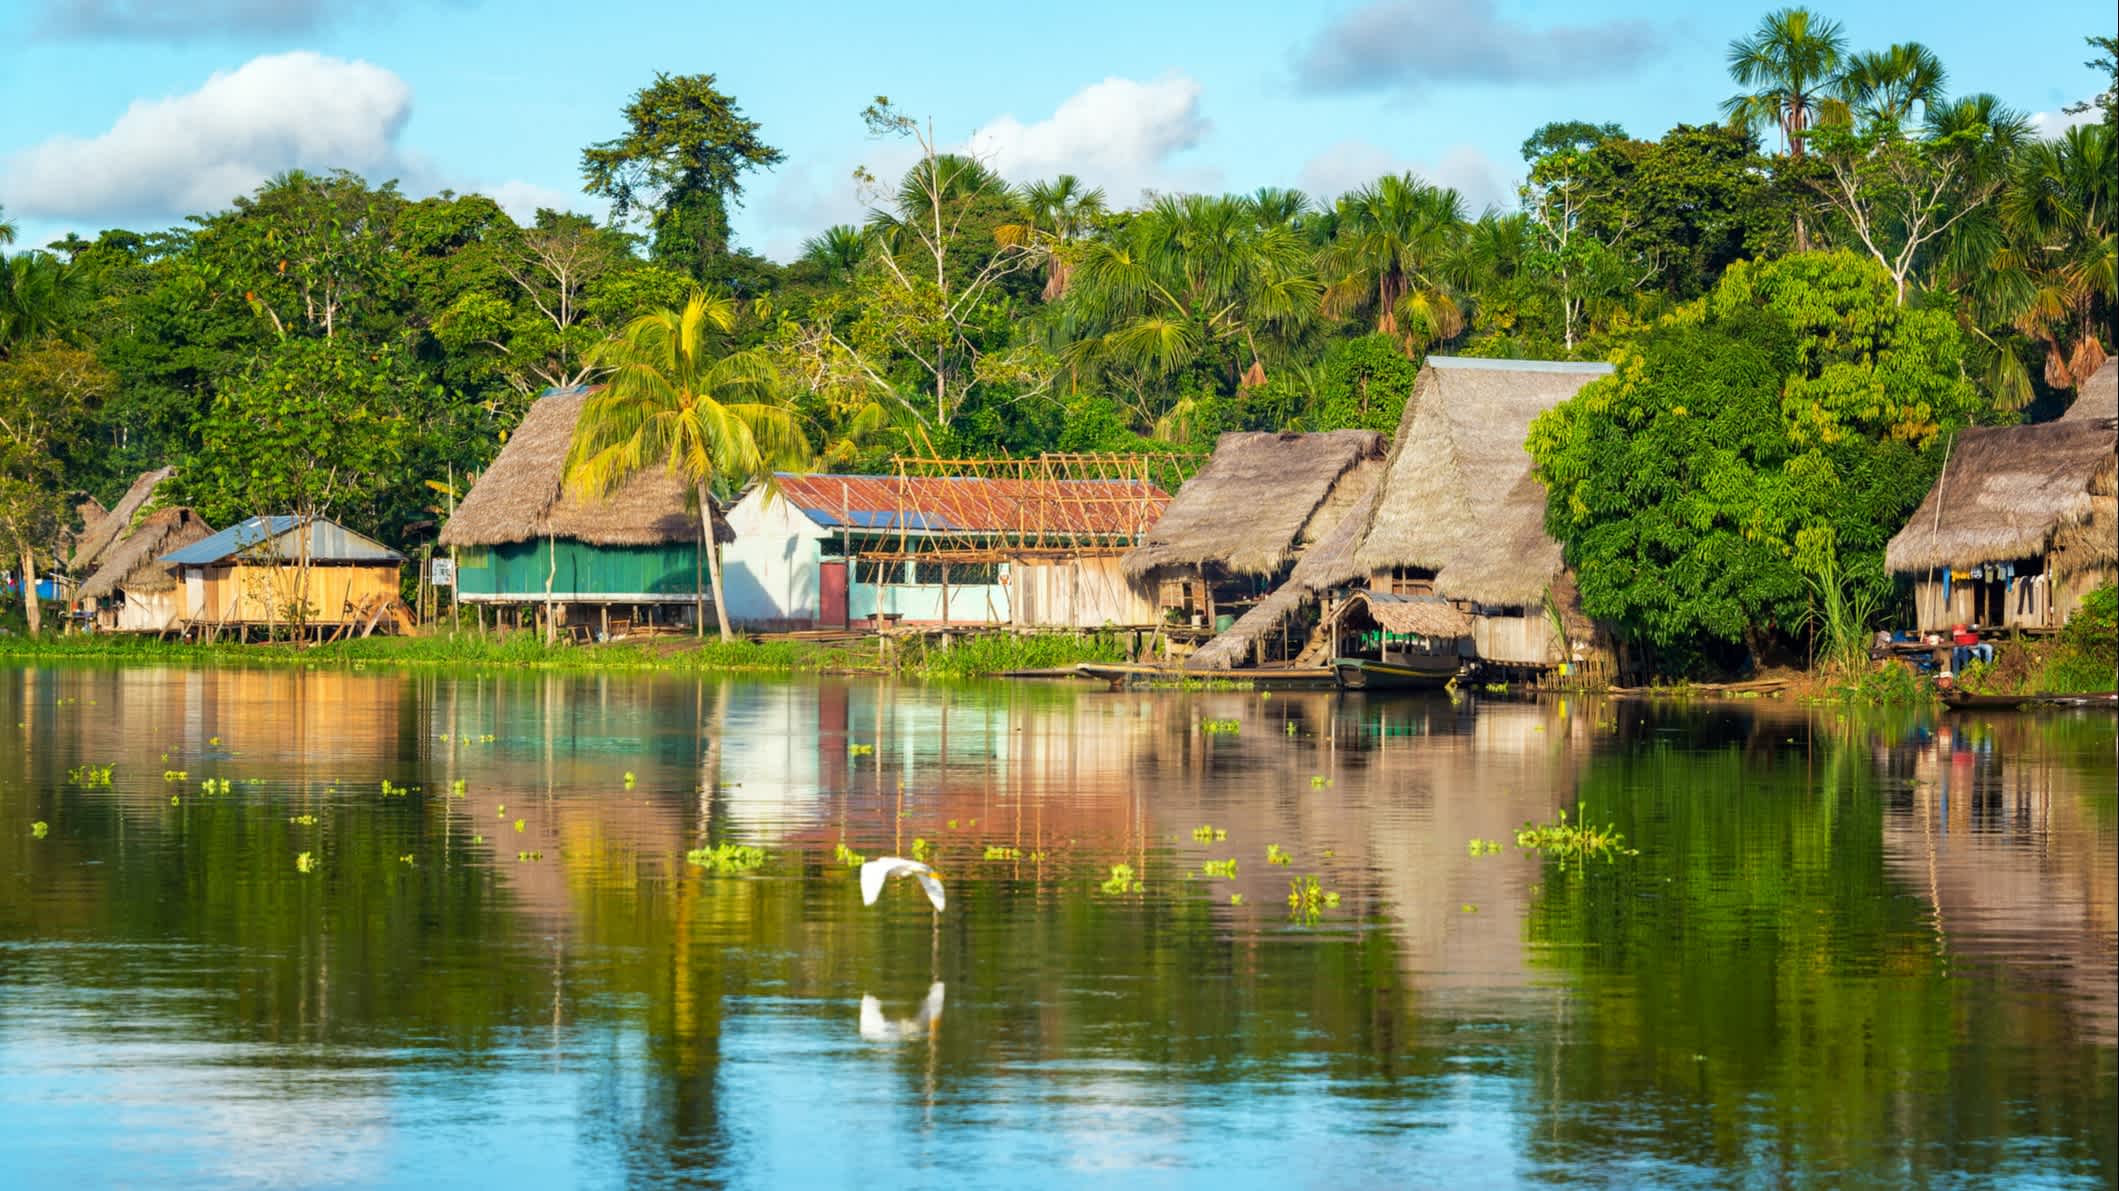 Blick auf ein kleines Dorf im Amazonas-Regenwald am Ufer des Flusses Yanayacu in Peru.